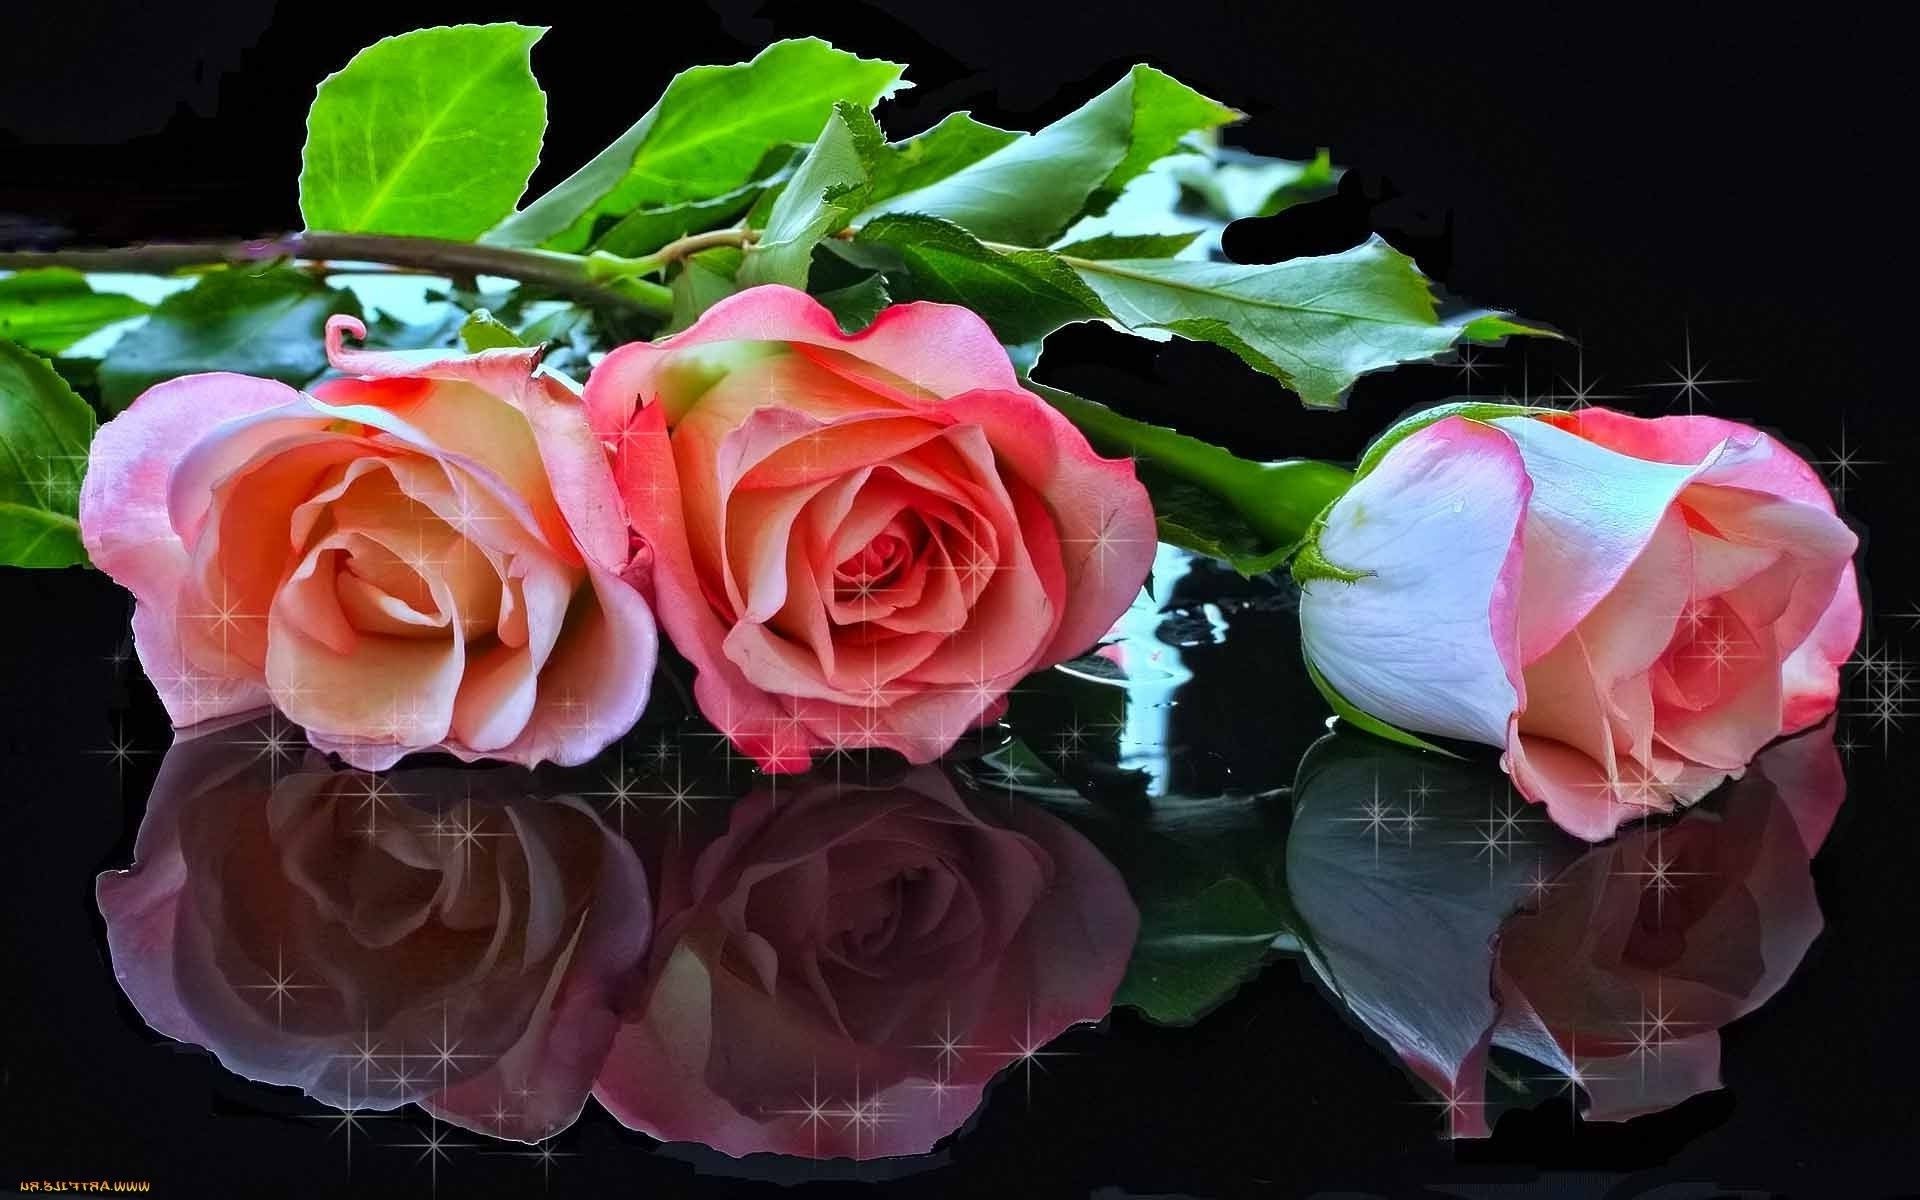 розы любовь цветок романтика лепесток свадьба букет романтический подарок цветочные блюминг юбилей лист день рождения флора природа праздник дружище